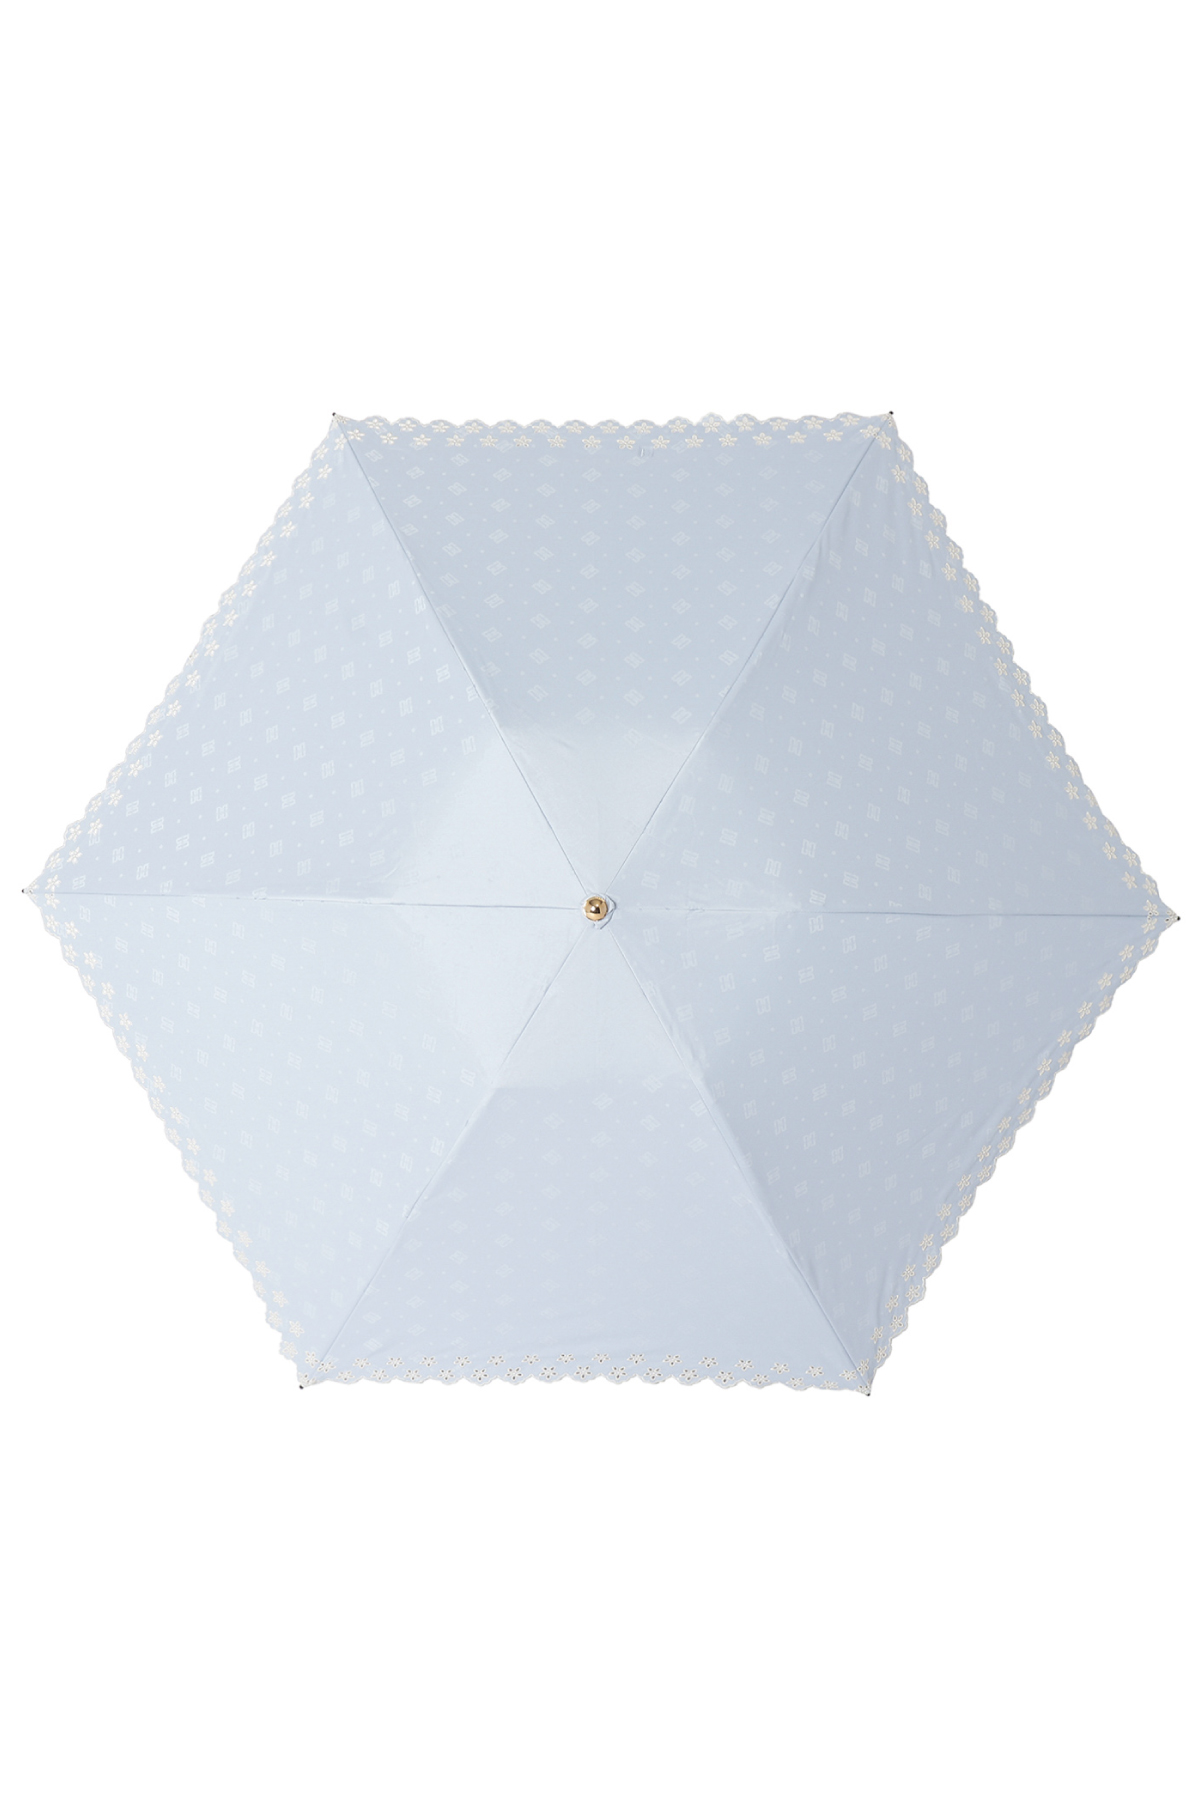 【日傘】ミニ折りたたみ傘ドットジャカード刺繍 詳細画像 3